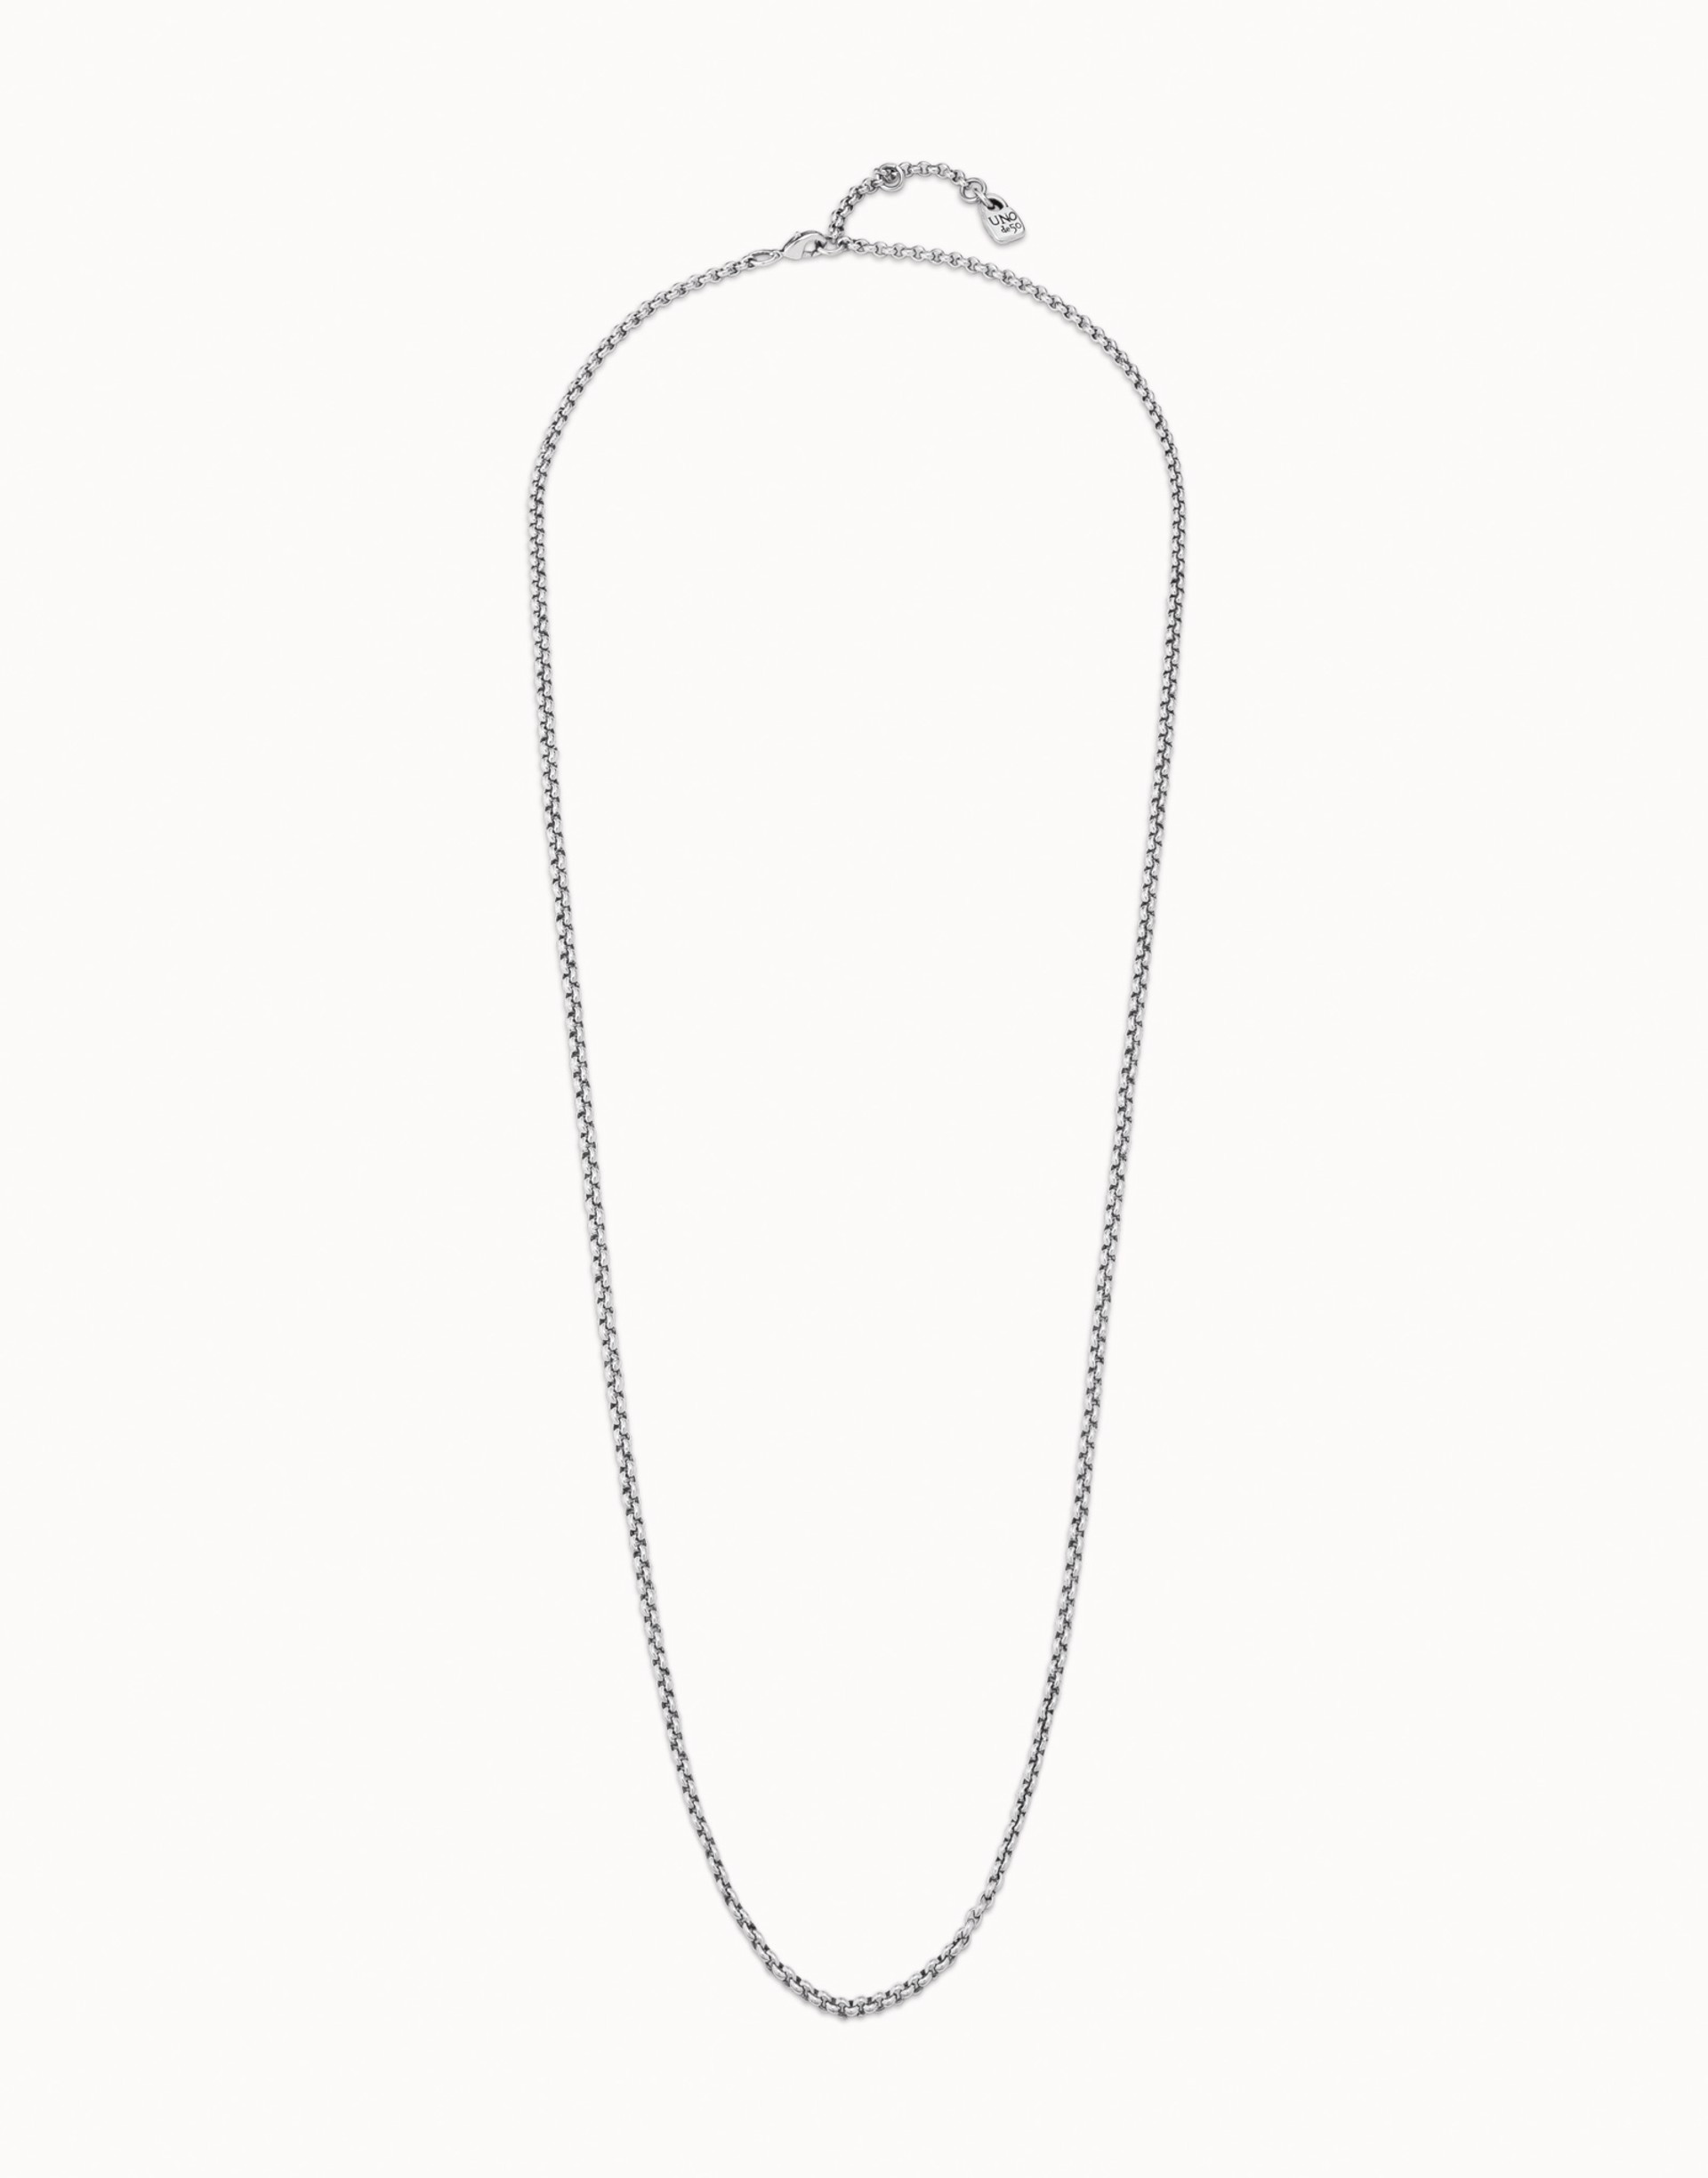 Necklace Cadena Silver Chain by UNO DE 50